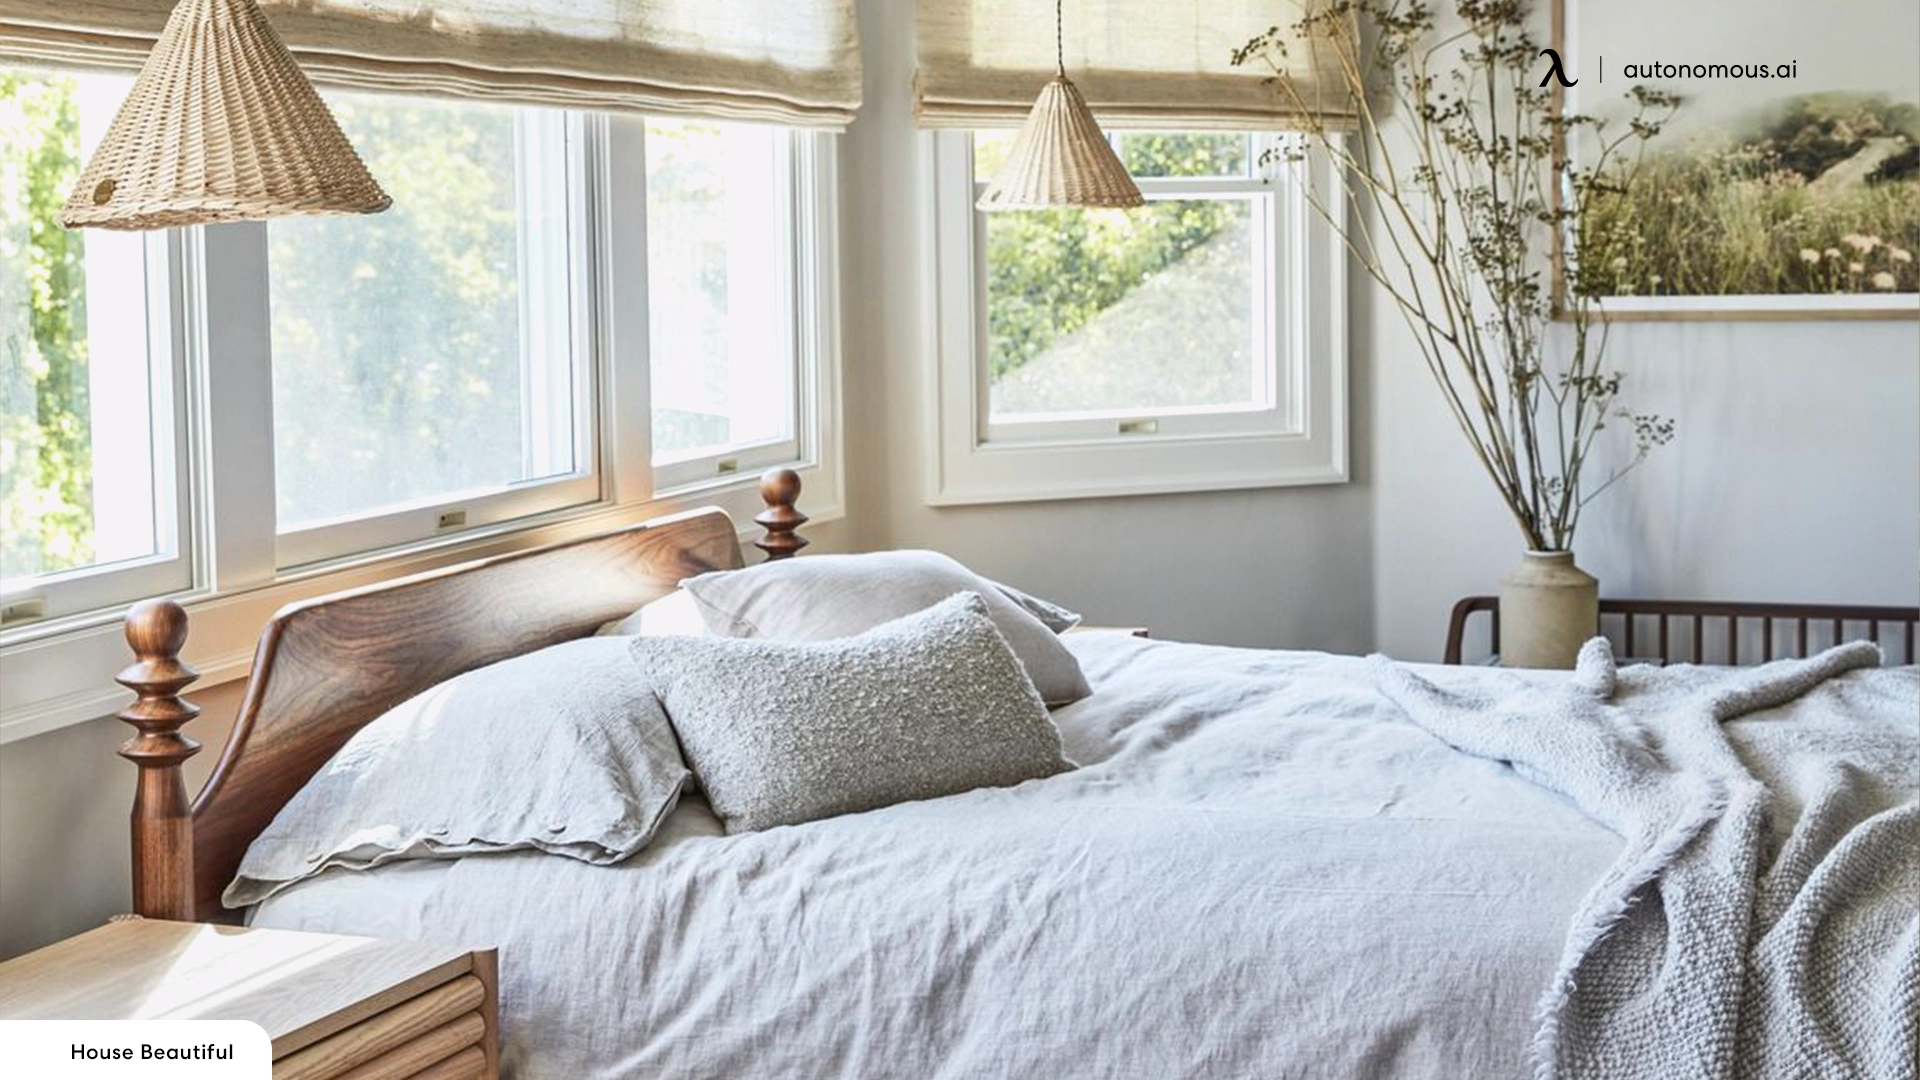 Keep it Cozy - spare bedroom ideas